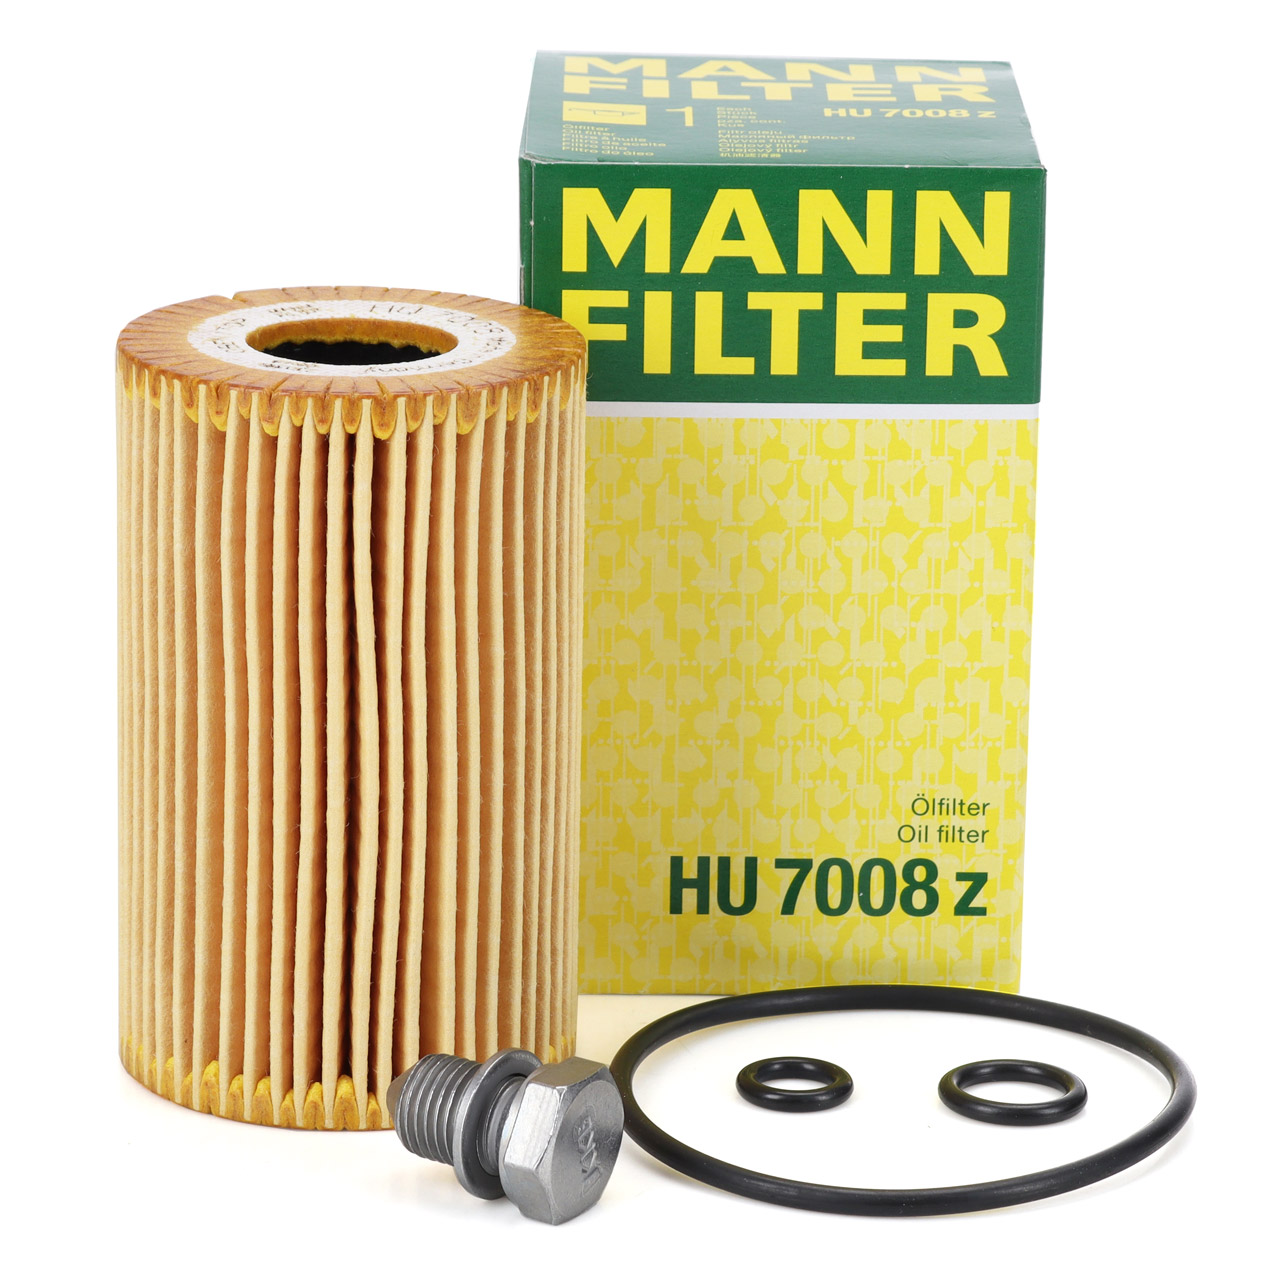 Ölfilter HU 7020 z MANN-FILTER + Ablassschraube für SEAT AUDI VW SKODA